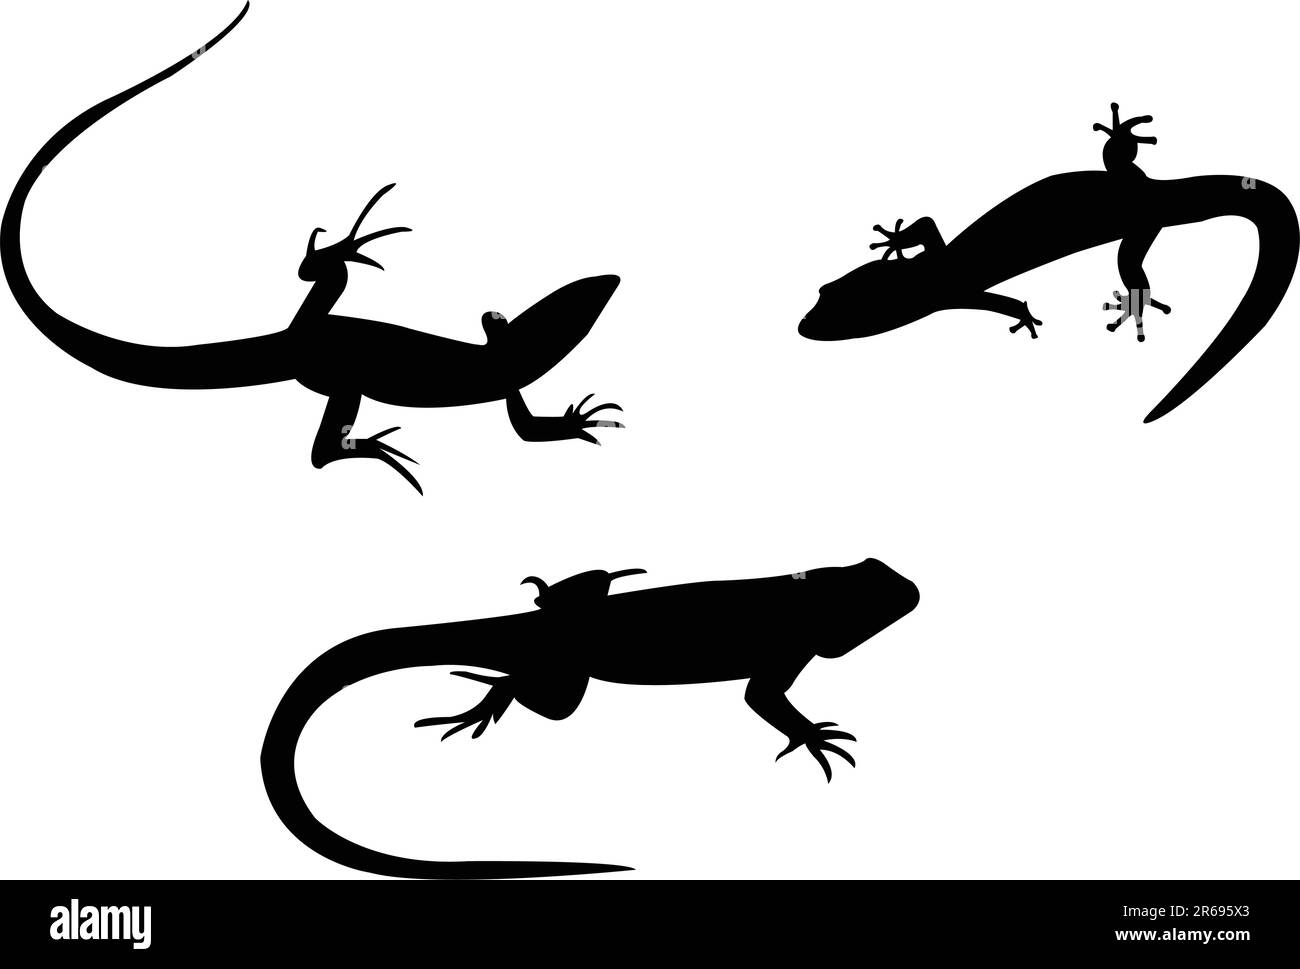 silhouettes de lézards - vecteur Illustration de Vecteur